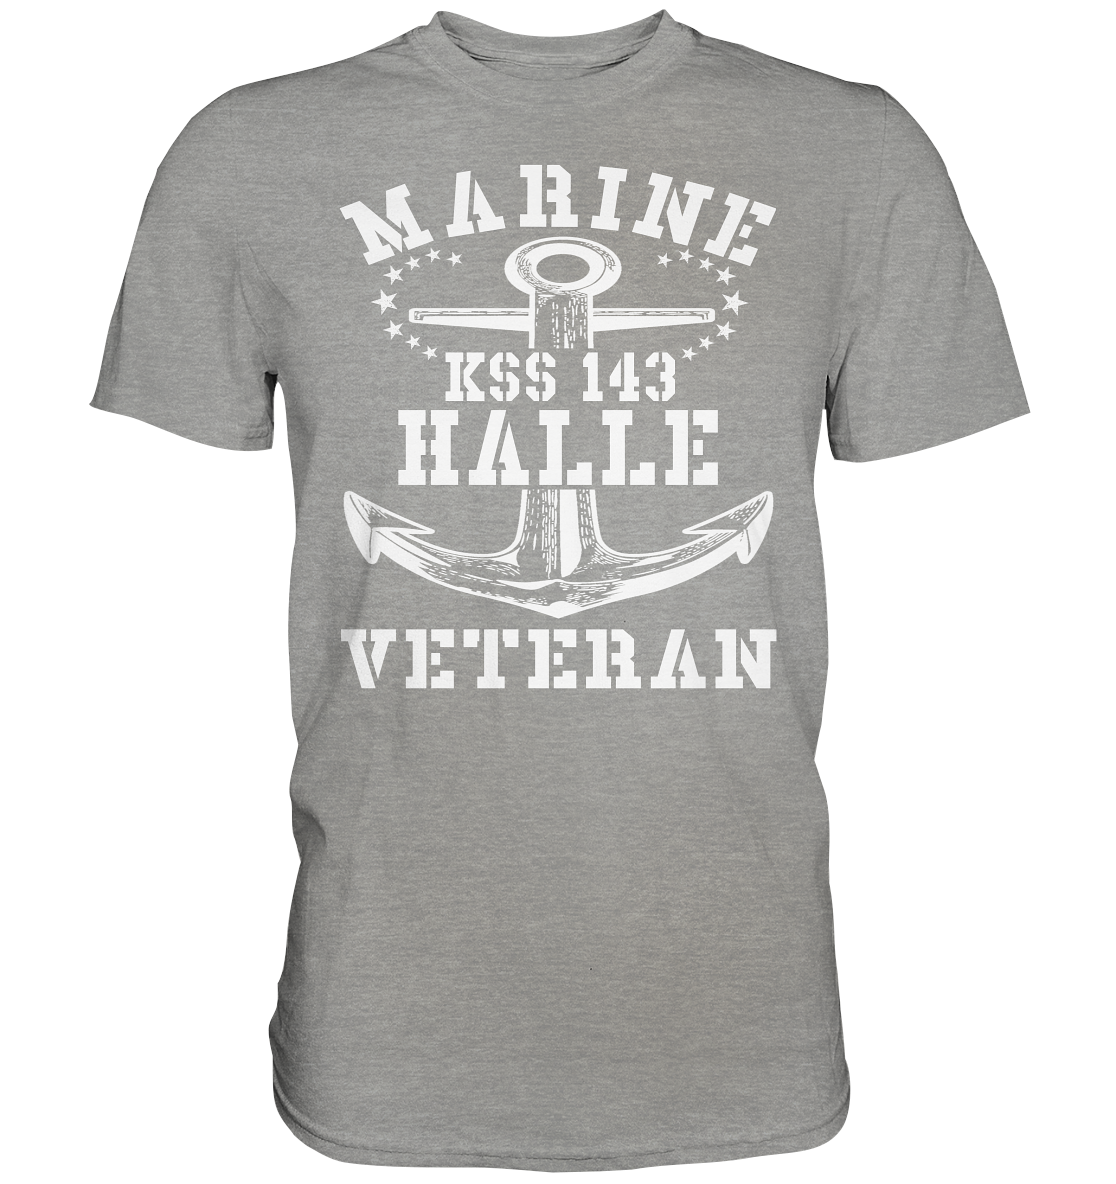 KSS 143 HALLE Marine Veteran - Premium Shirt